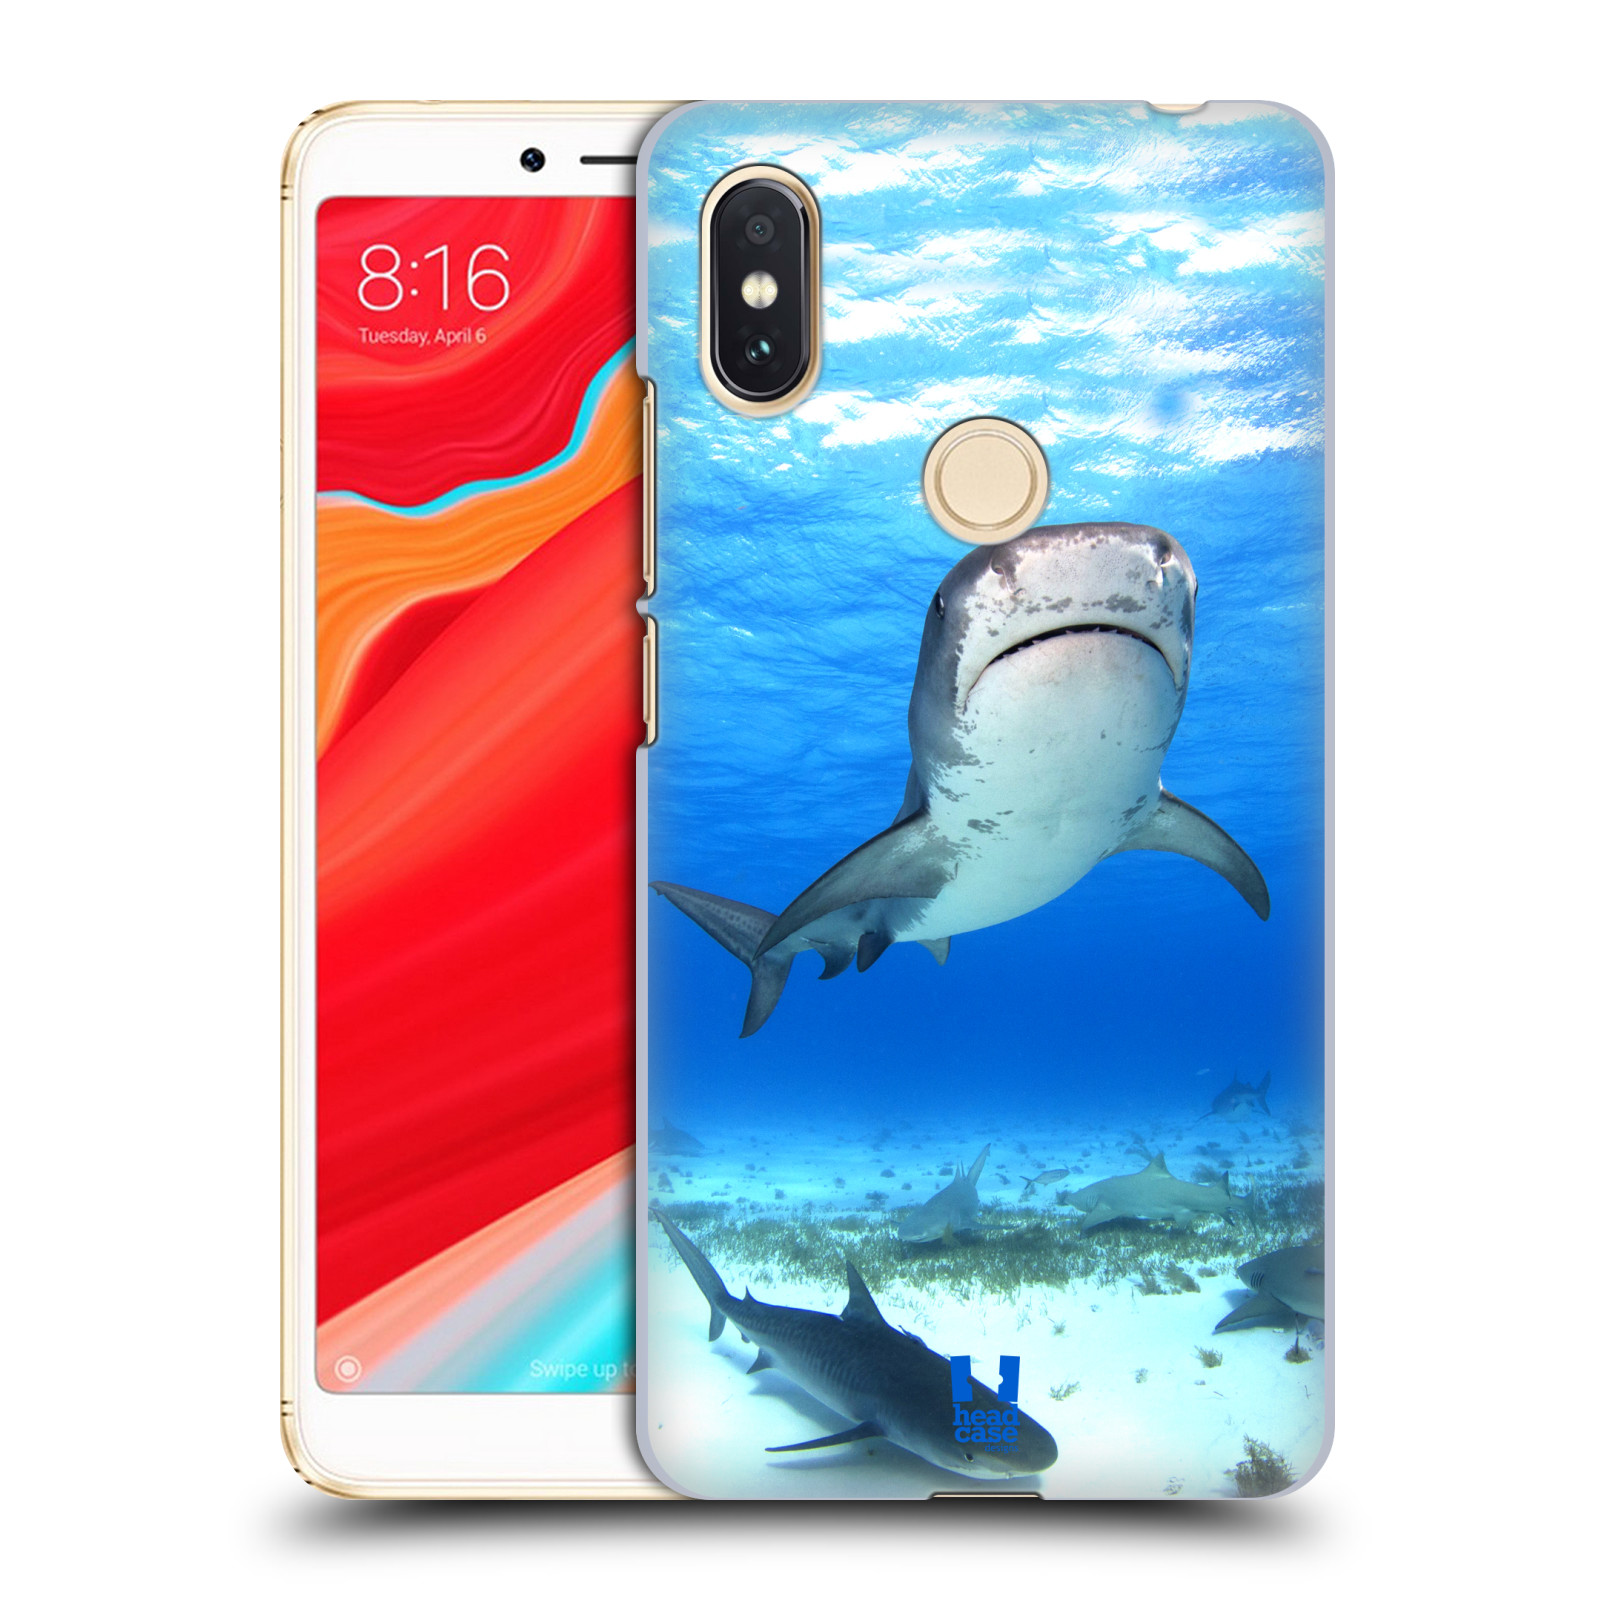 HEAD CASE plastový obal na mobil Xiaomi Redmi S2 vzor slavná zvířata foto žralok tygří